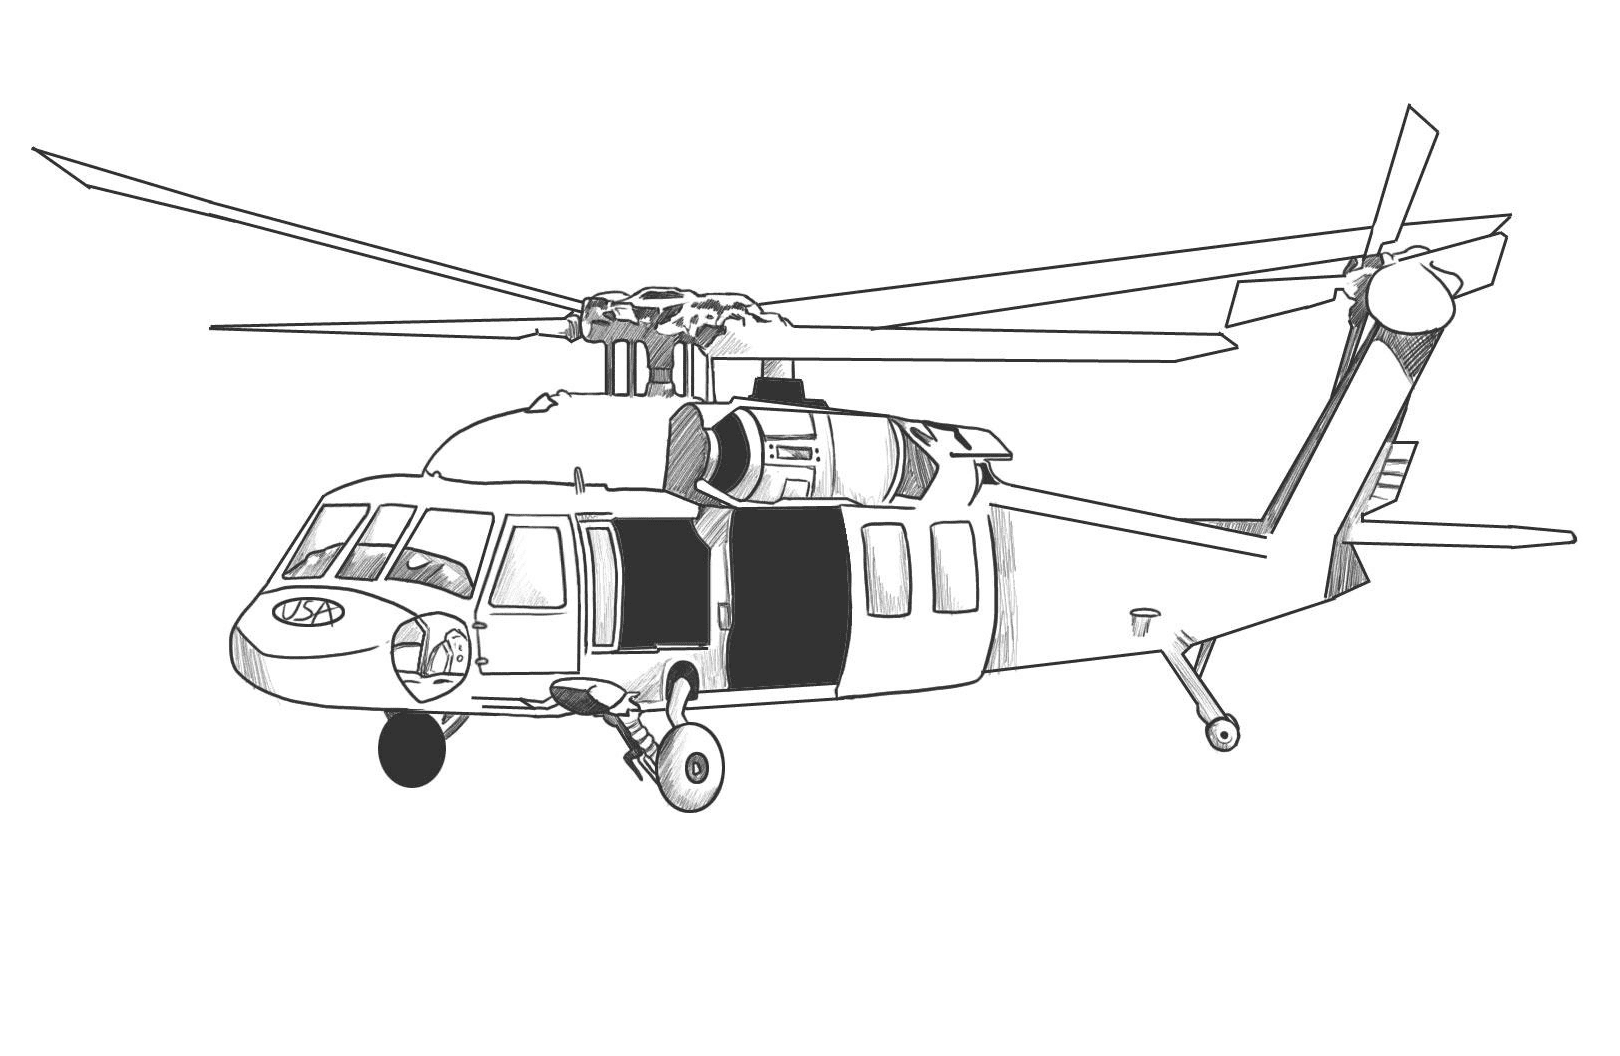 Helicóptero para impressão em helicóptero